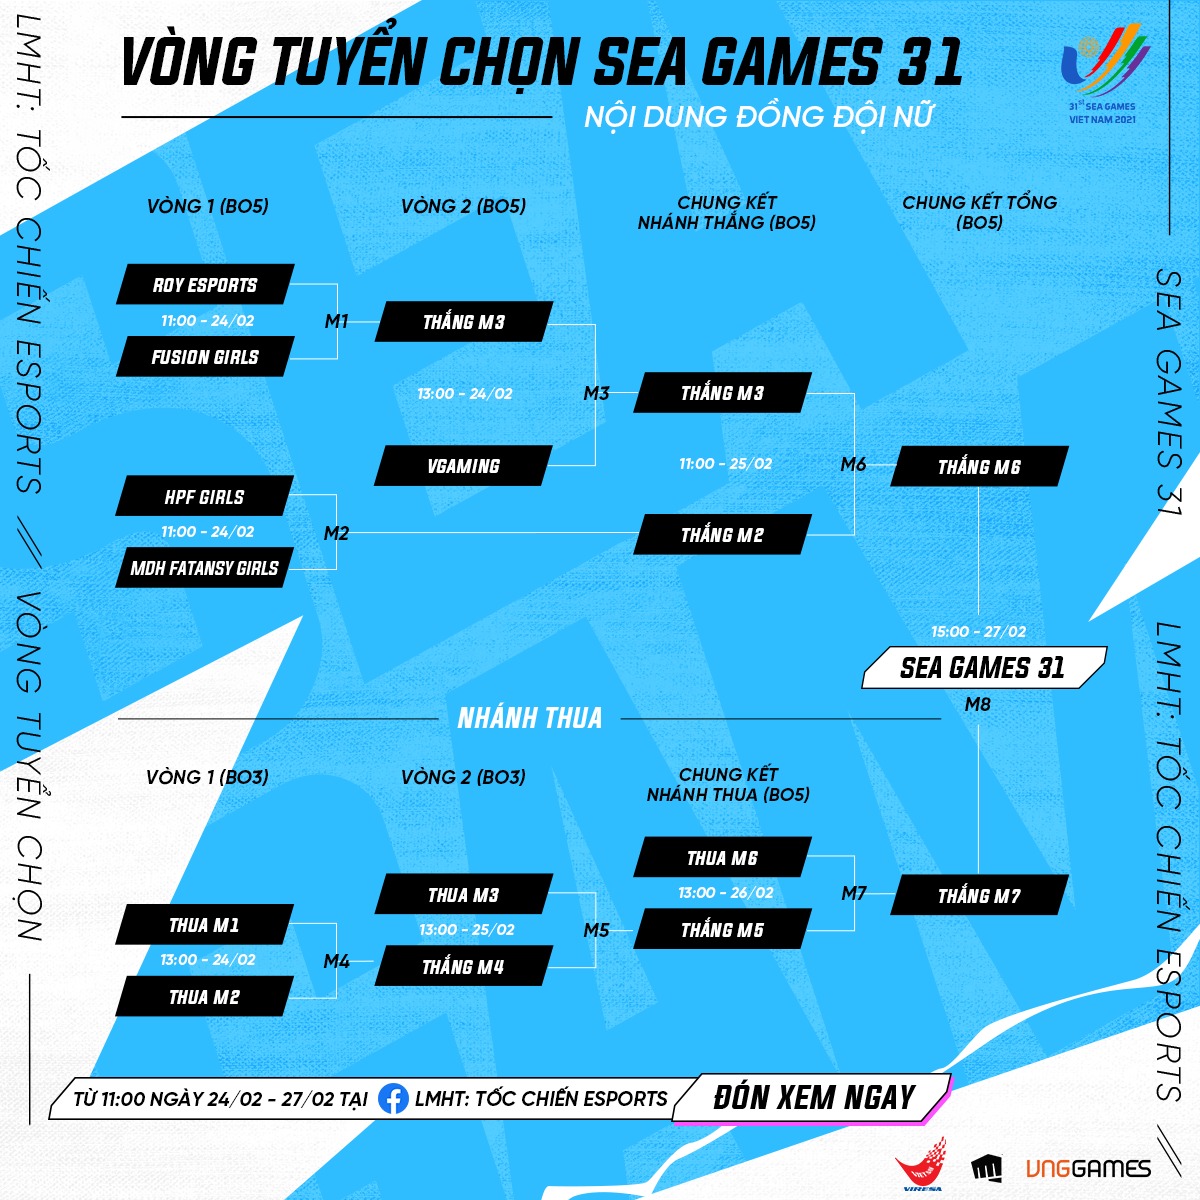 Lịch thi đấu vòng loại Tốc Chiến SEA Games 31 - nội dung đồng đội nữ - Ảnh 1